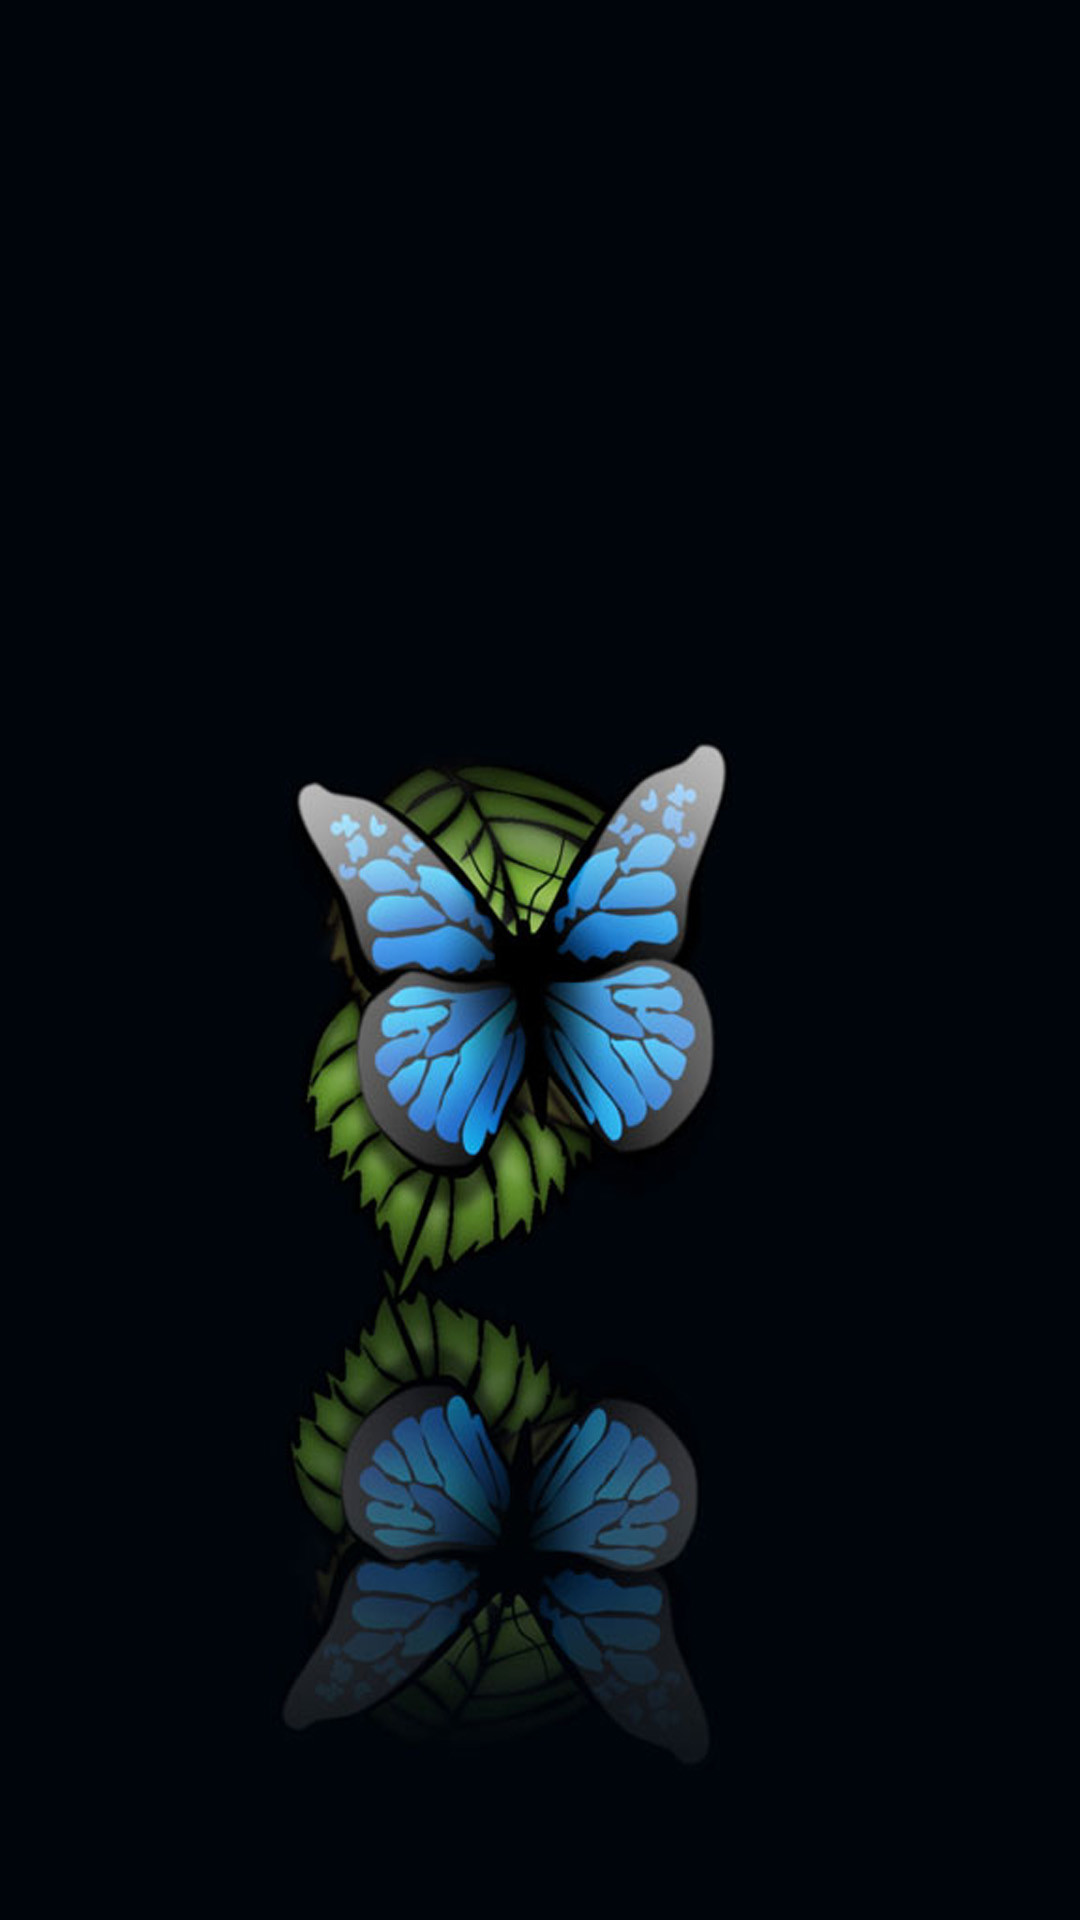 1080x1920 0 Blue Butterflies iPhone Wallpaper Blue Butterfly Black Background  iPhonePlus HD Wallpaper iPod.